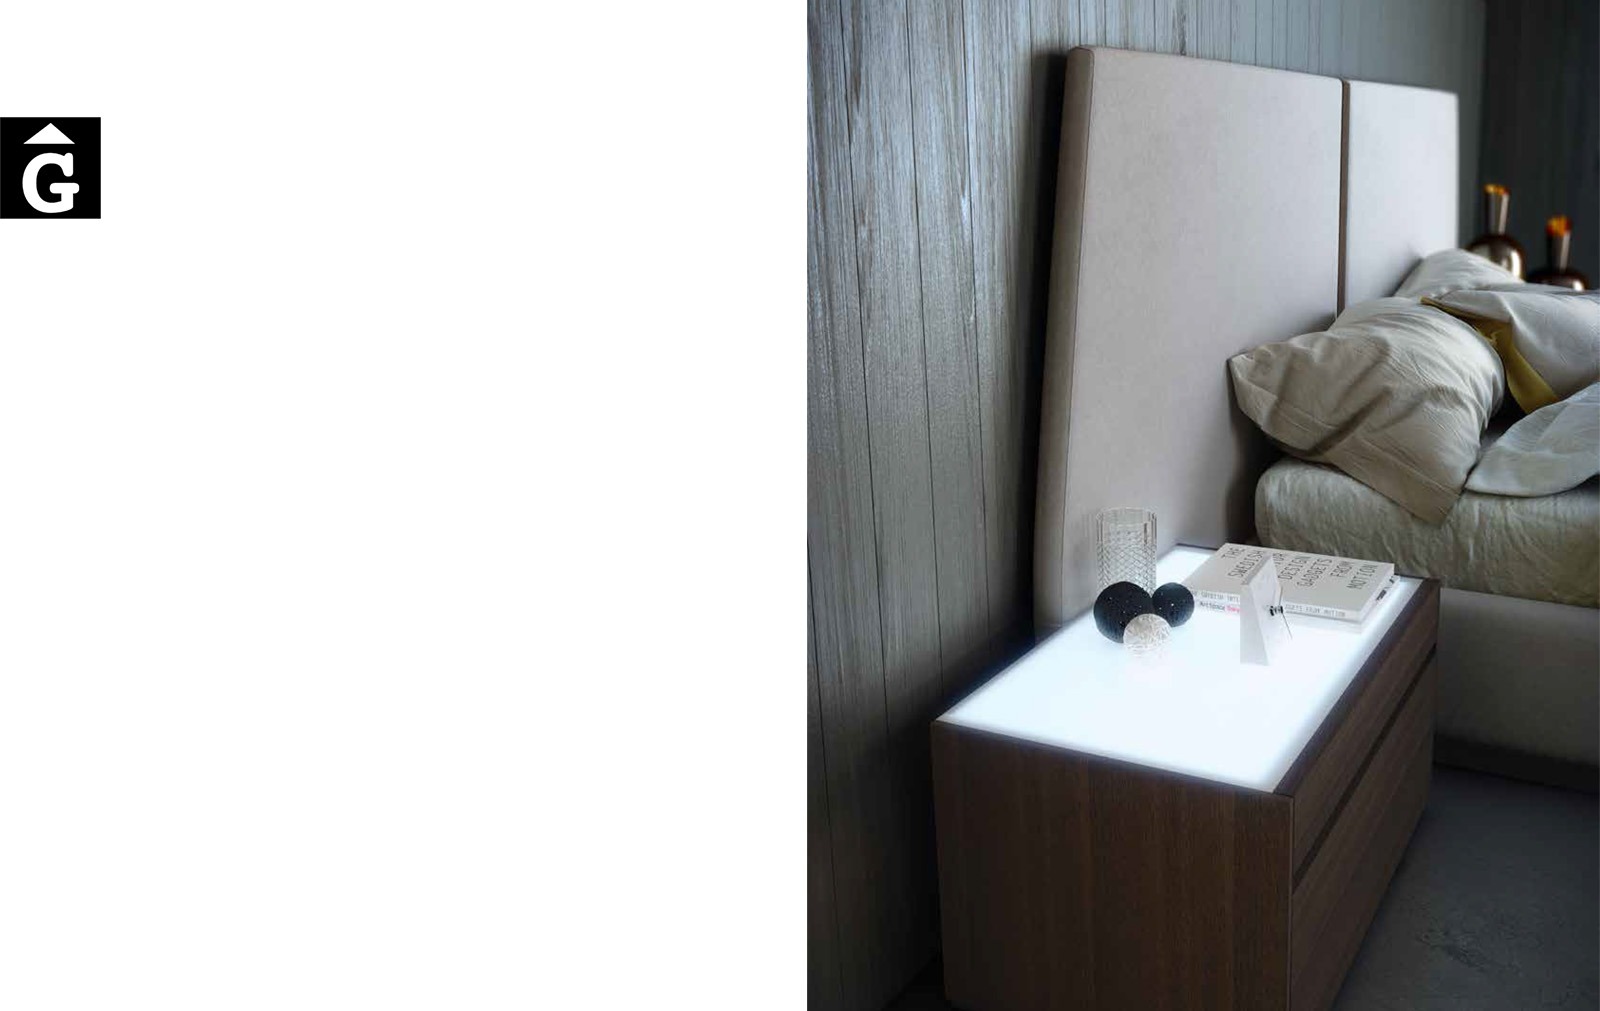 24 1 Area mobles Ciurans per mobles Gifreu programa modular disseny atemporal realitzat amb materials i ferratges de qualitat estil modern minimal